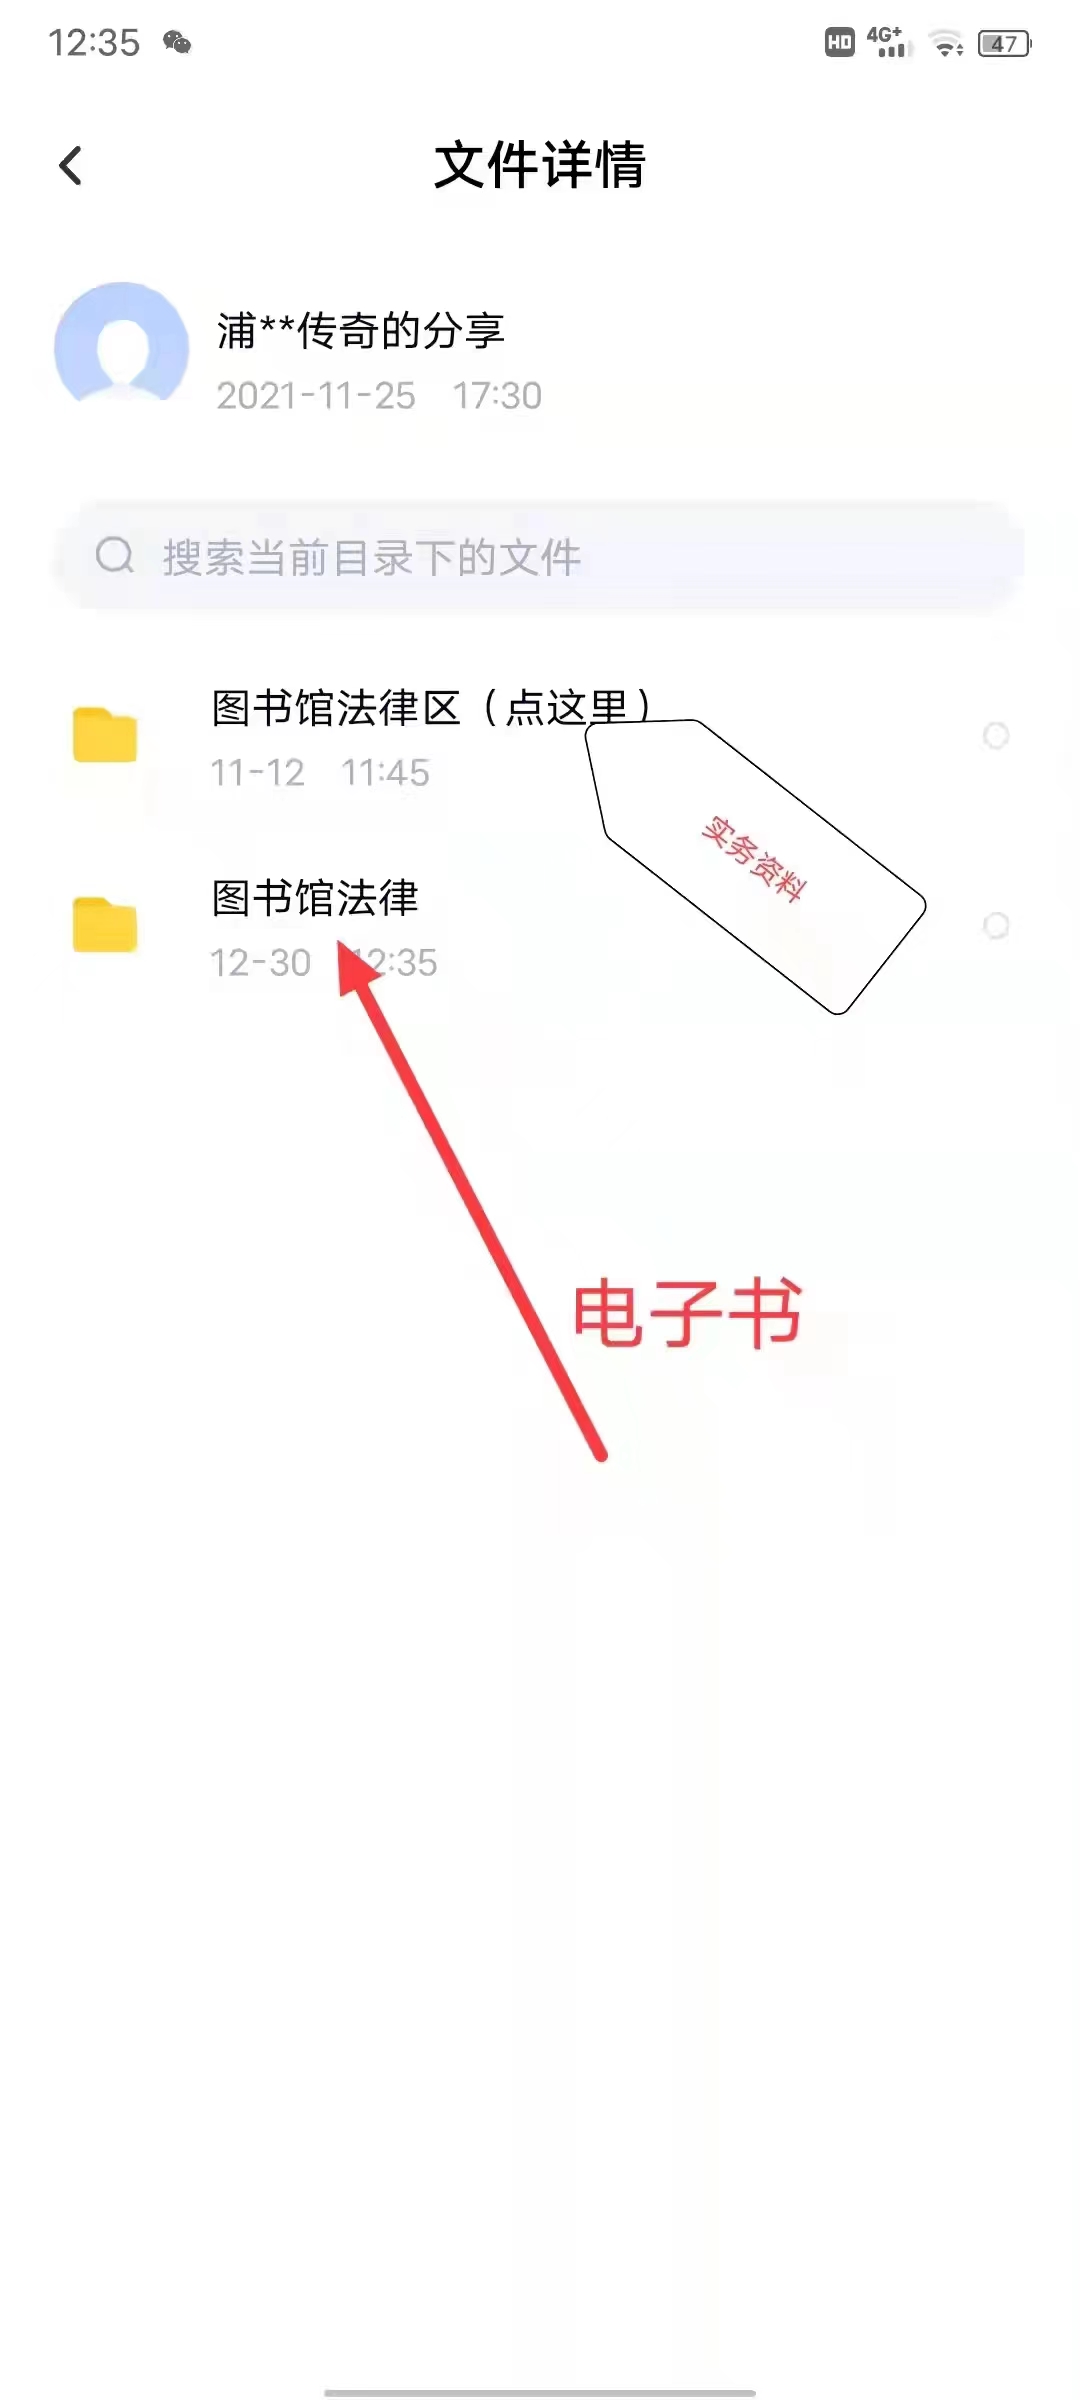 【法律】【PDF】212 民事执行实务精要 202201 张元